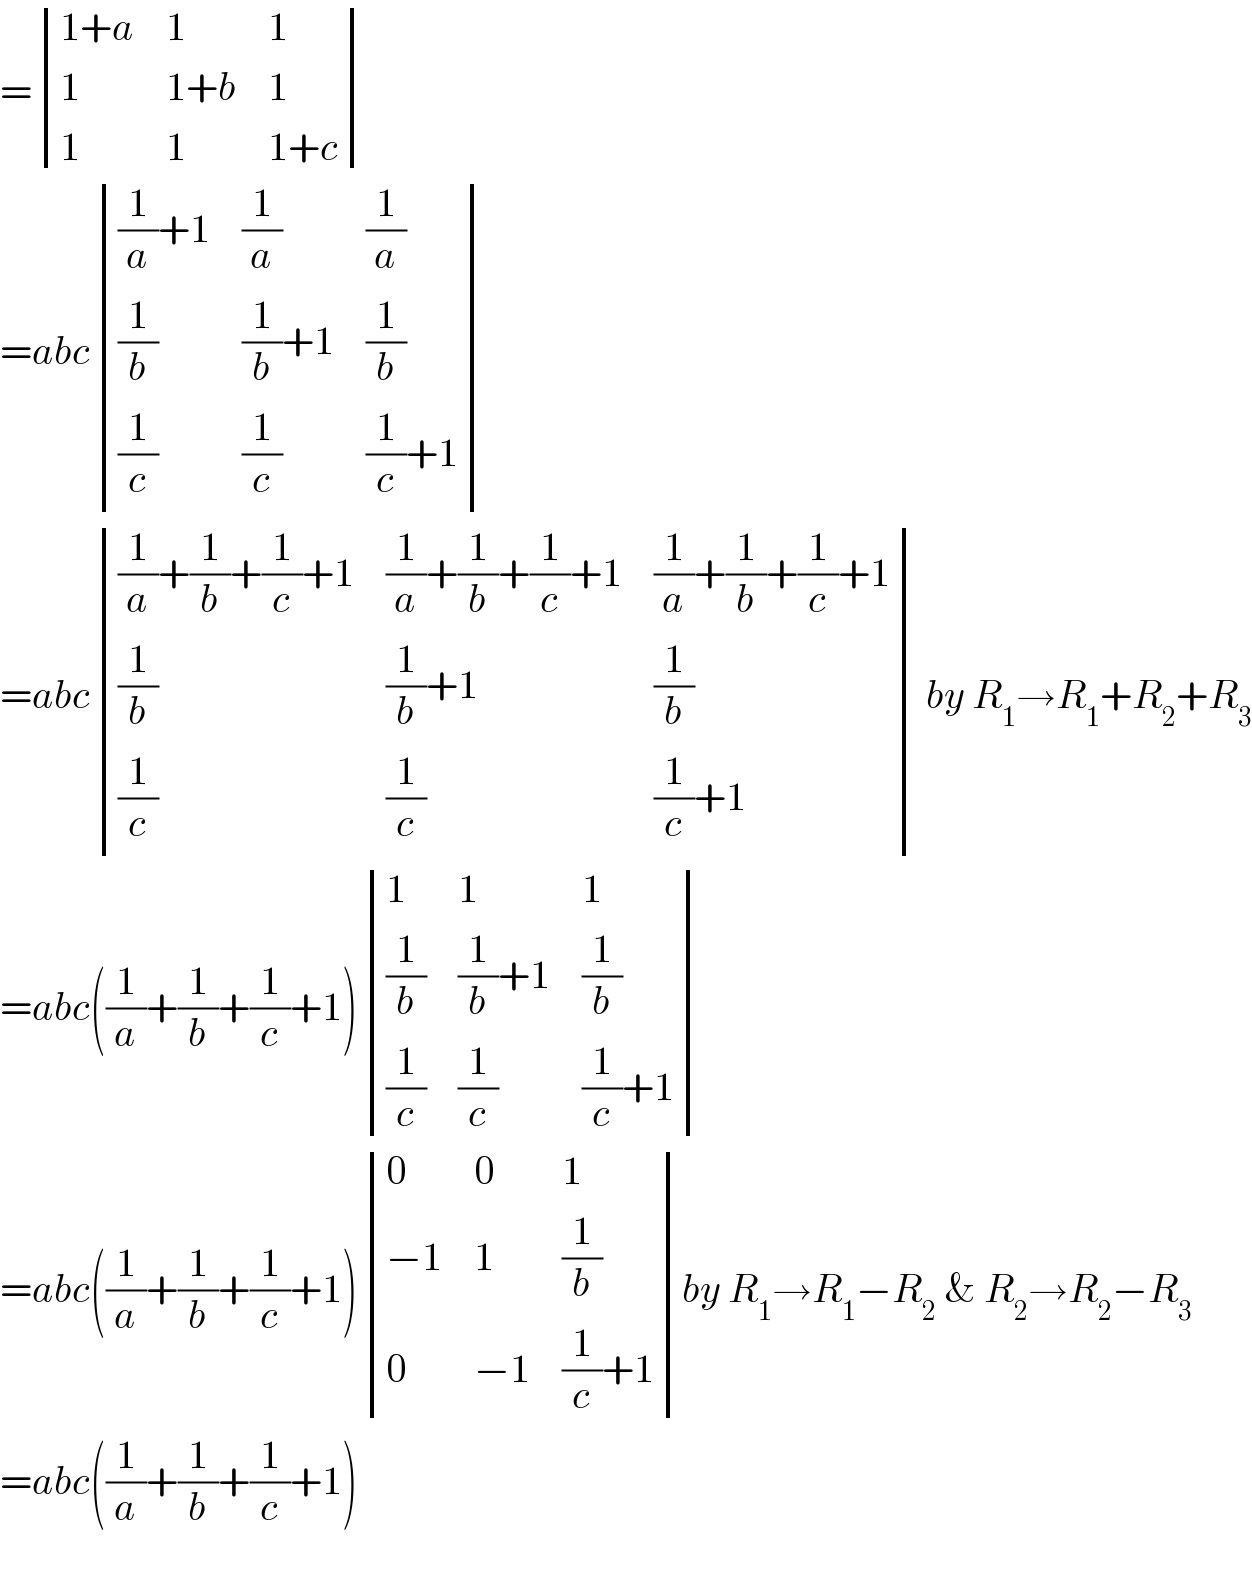 = determinant (((1+a),1,1),(1,(1+b),1),(1,1,(1+c)))  =abc determinant ((((1/a)+1),(1/a),(1/a)),((1/b),((1/b)+1),(1/b)),((1/c),(1/c),((1/c)+1)))  =abc determinant ((((1/a)+(1/b)+(1/c)+1),((1/a)+(1/b)+(1/c)+1),((1/a)+(1/b)+(1/c)+1)),((1/b),((1/b)+1),(1/b)),((1/c),(1/c),((1/c)+1))) by R_1 →R_1 +R_2 +R_3   =abc((1/a)+(1/b)+(1/c)+1) determinant ((1,1,1),((1/b),((1/b)+1),(1/b)),((1/c),(1/c),((1/c)+1)))  =abc((1/a)+(1/b)+(1/c)+1) determinant ((0,0,1),((−1),1,(1/b)),(0,(−1),((1/c)+1)))by R_1 →R_1 −R_2  & R_2 →R_2 −R_3   =abc((1/a)+(1/b)+(1/c)+1)    